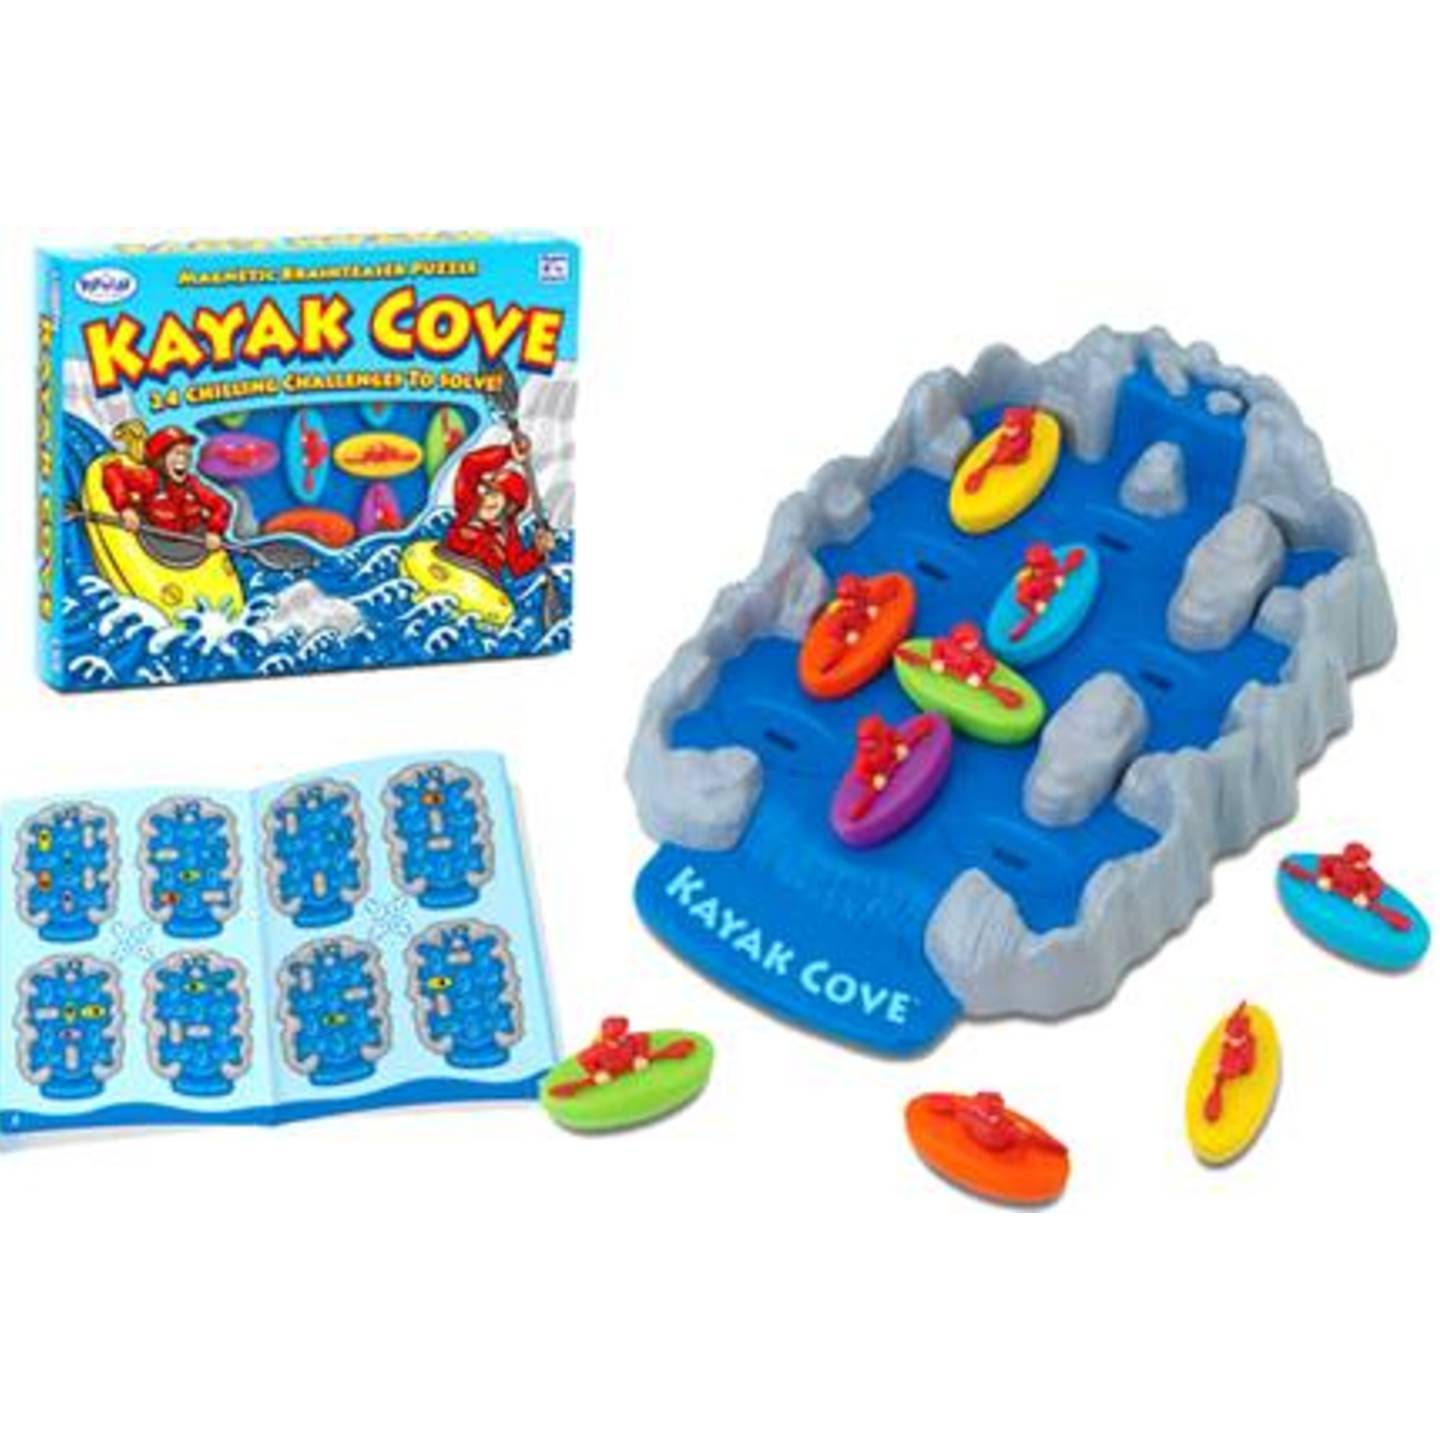 Kayak Cove Adventure Game